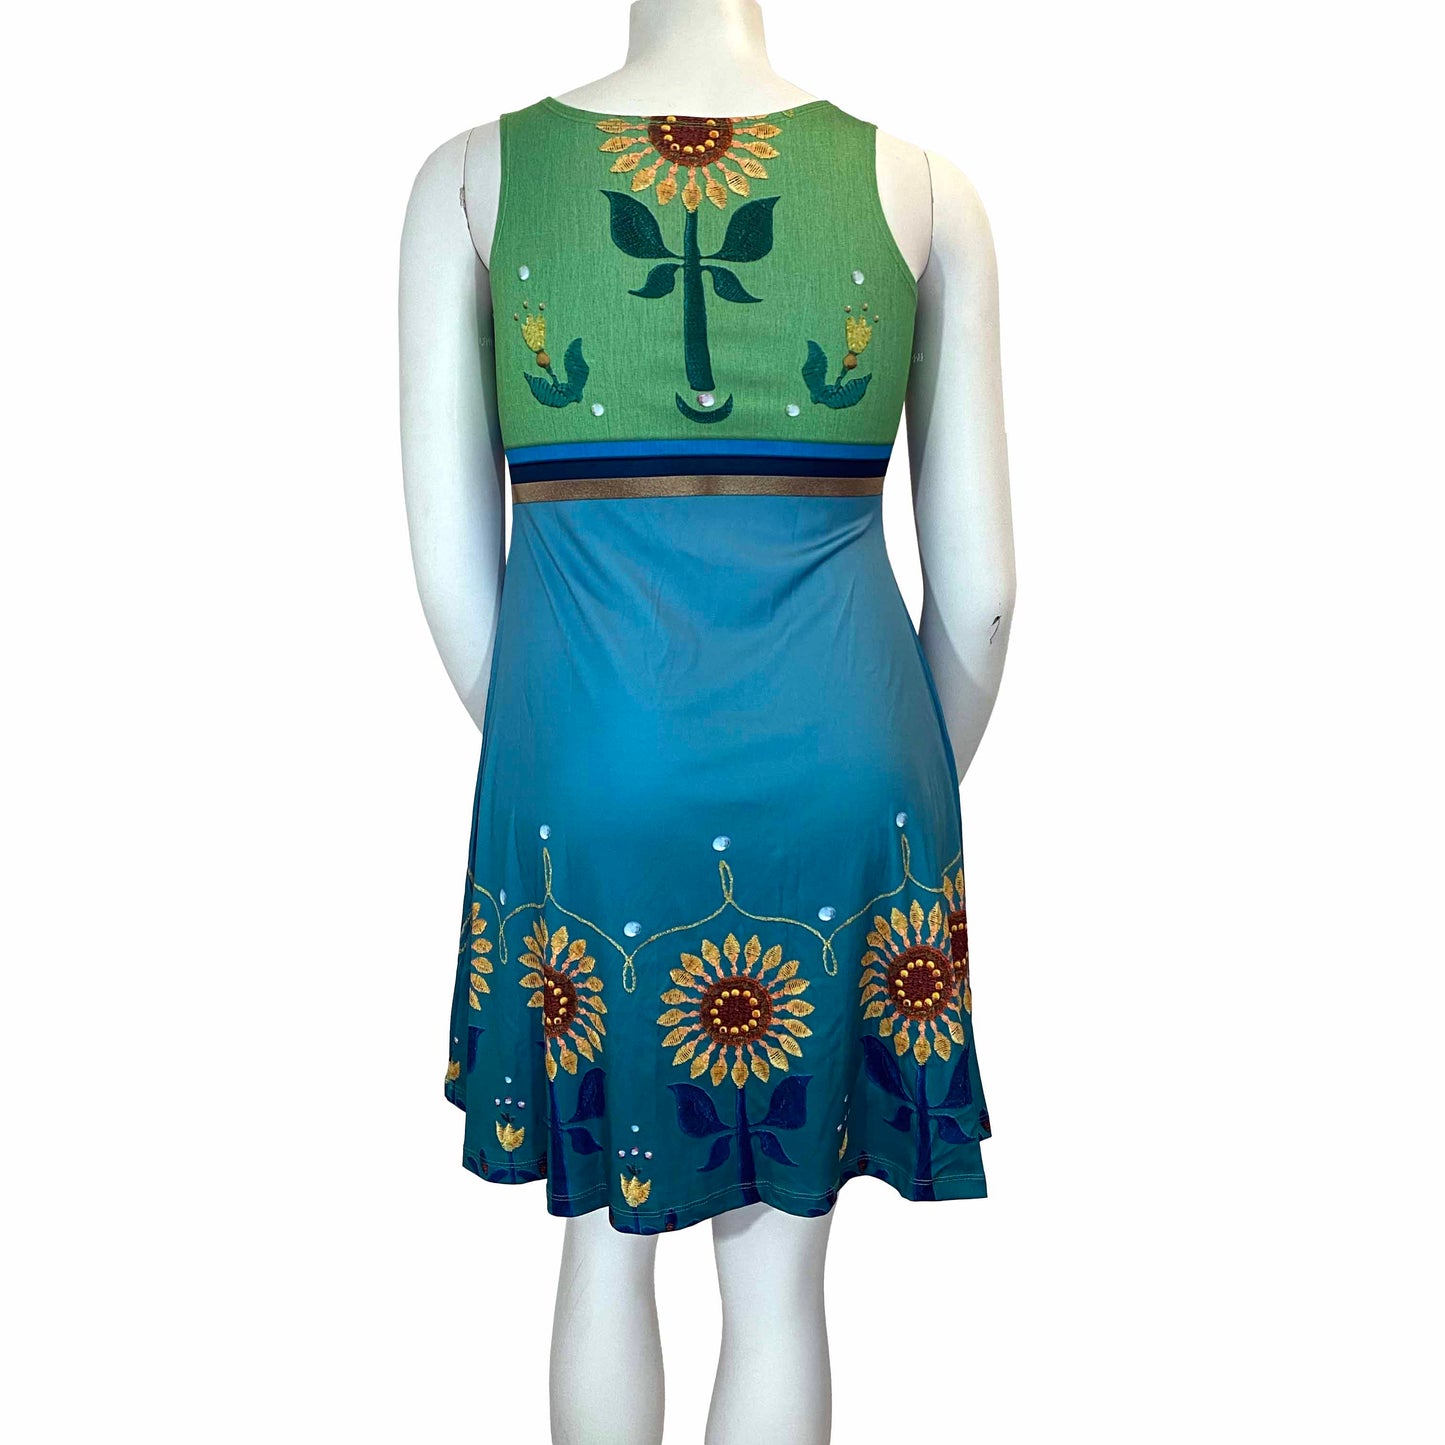 Anna Fever Inspired Sleeveless Dress